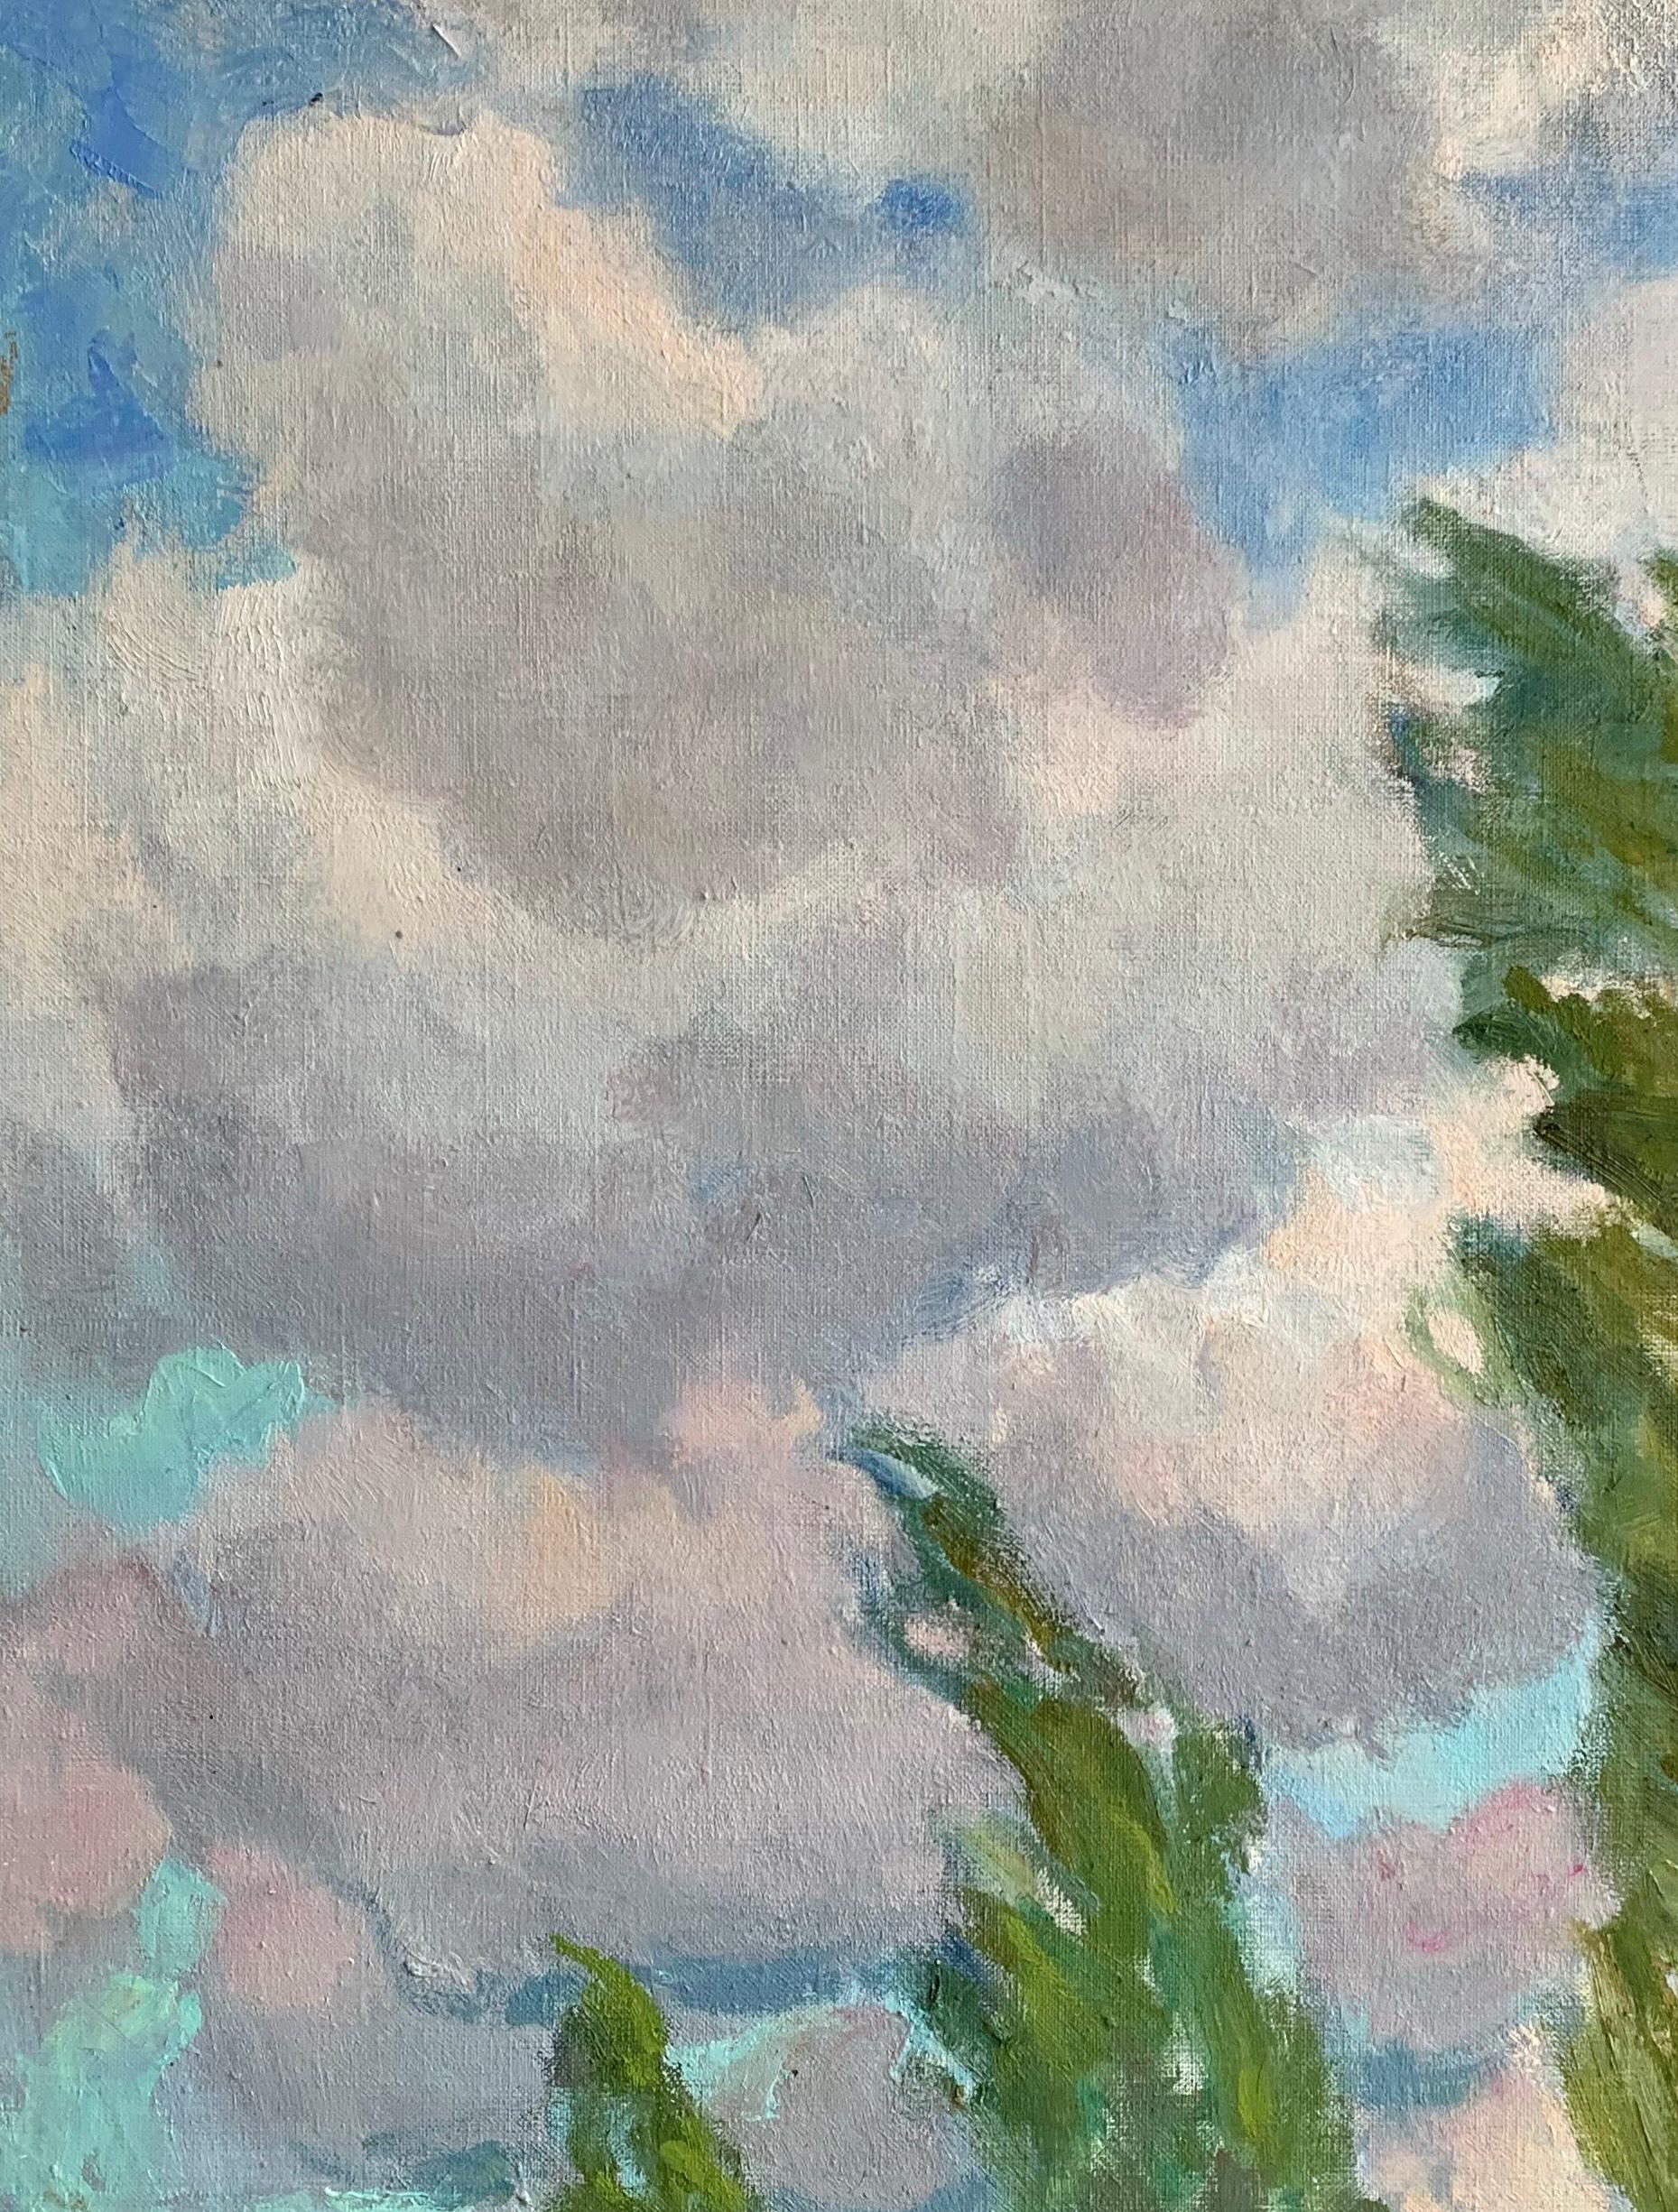 Bright Sky Landscape Vintage Oil Canvas Painting Framed Original Art by Smirnov For Sale 2